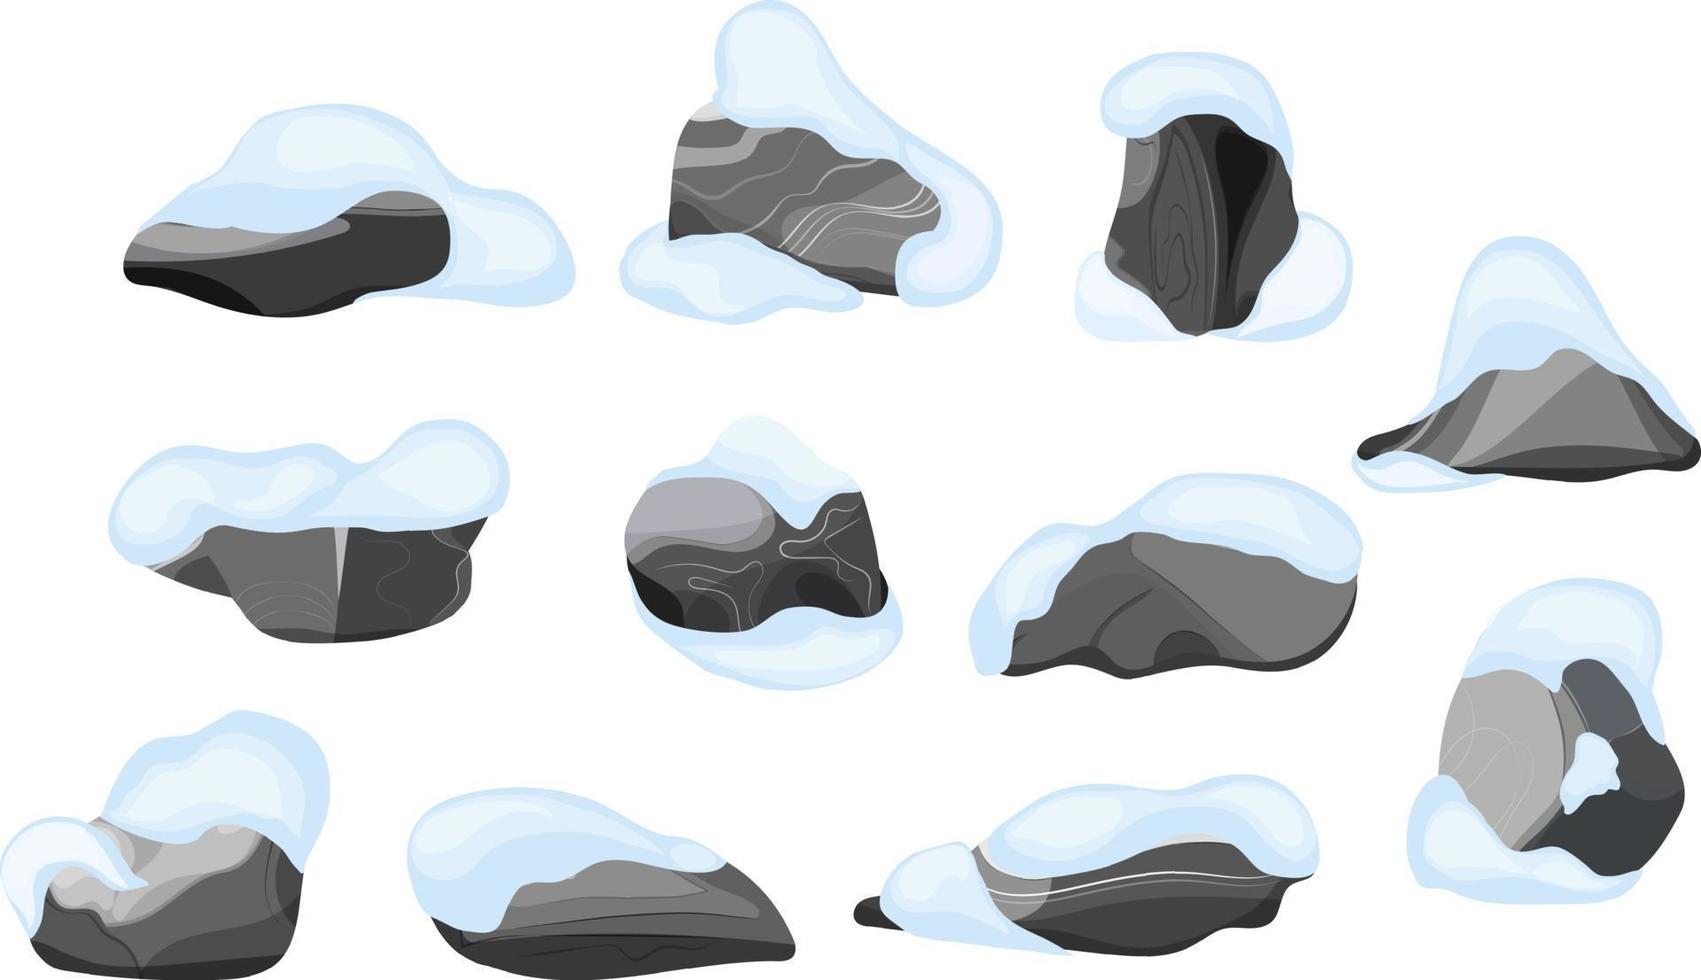 colección de piedras de diversas formas en la nieve. guijarros costeros, adoquines, grava, minerales y formaciones geológicas. fragmentos de roca, cantos rodados y material de construcción. vector